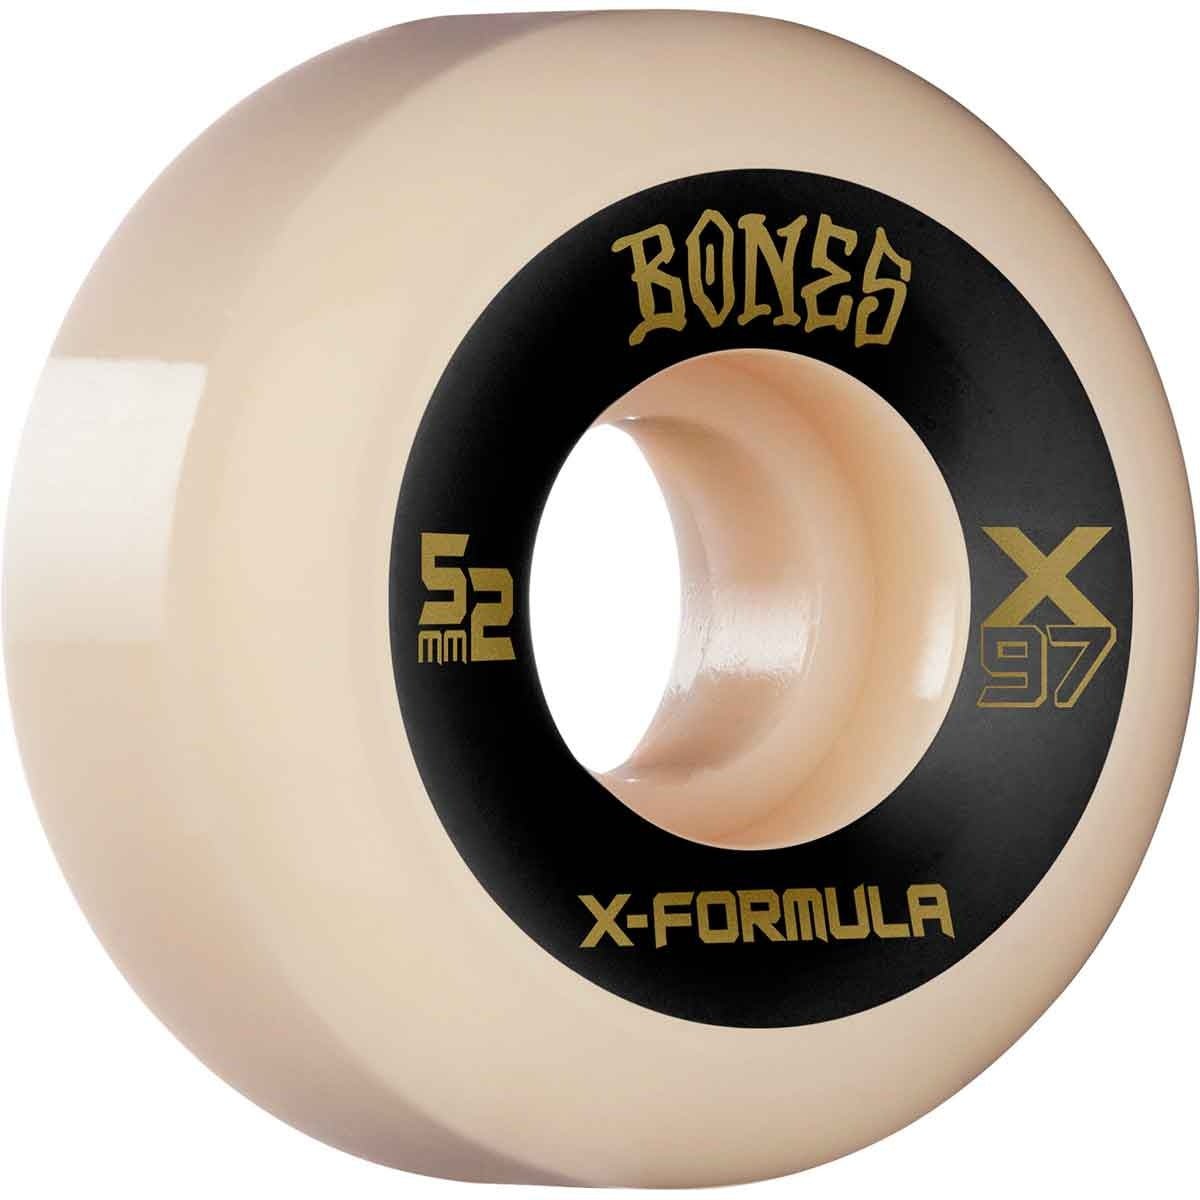 Bones X-Formula 97a 55 v5 sidecut